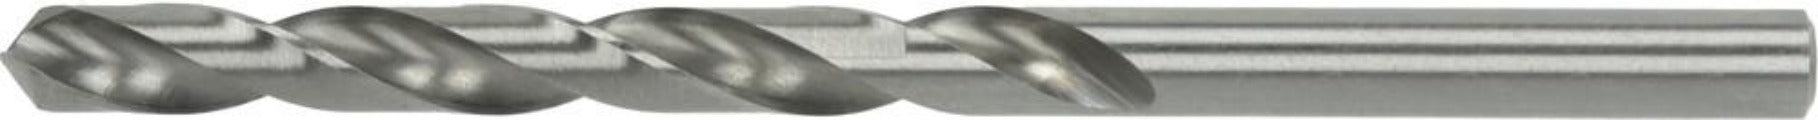 HSSG-Bohrer DIN 338 G 12,0 mm Standard